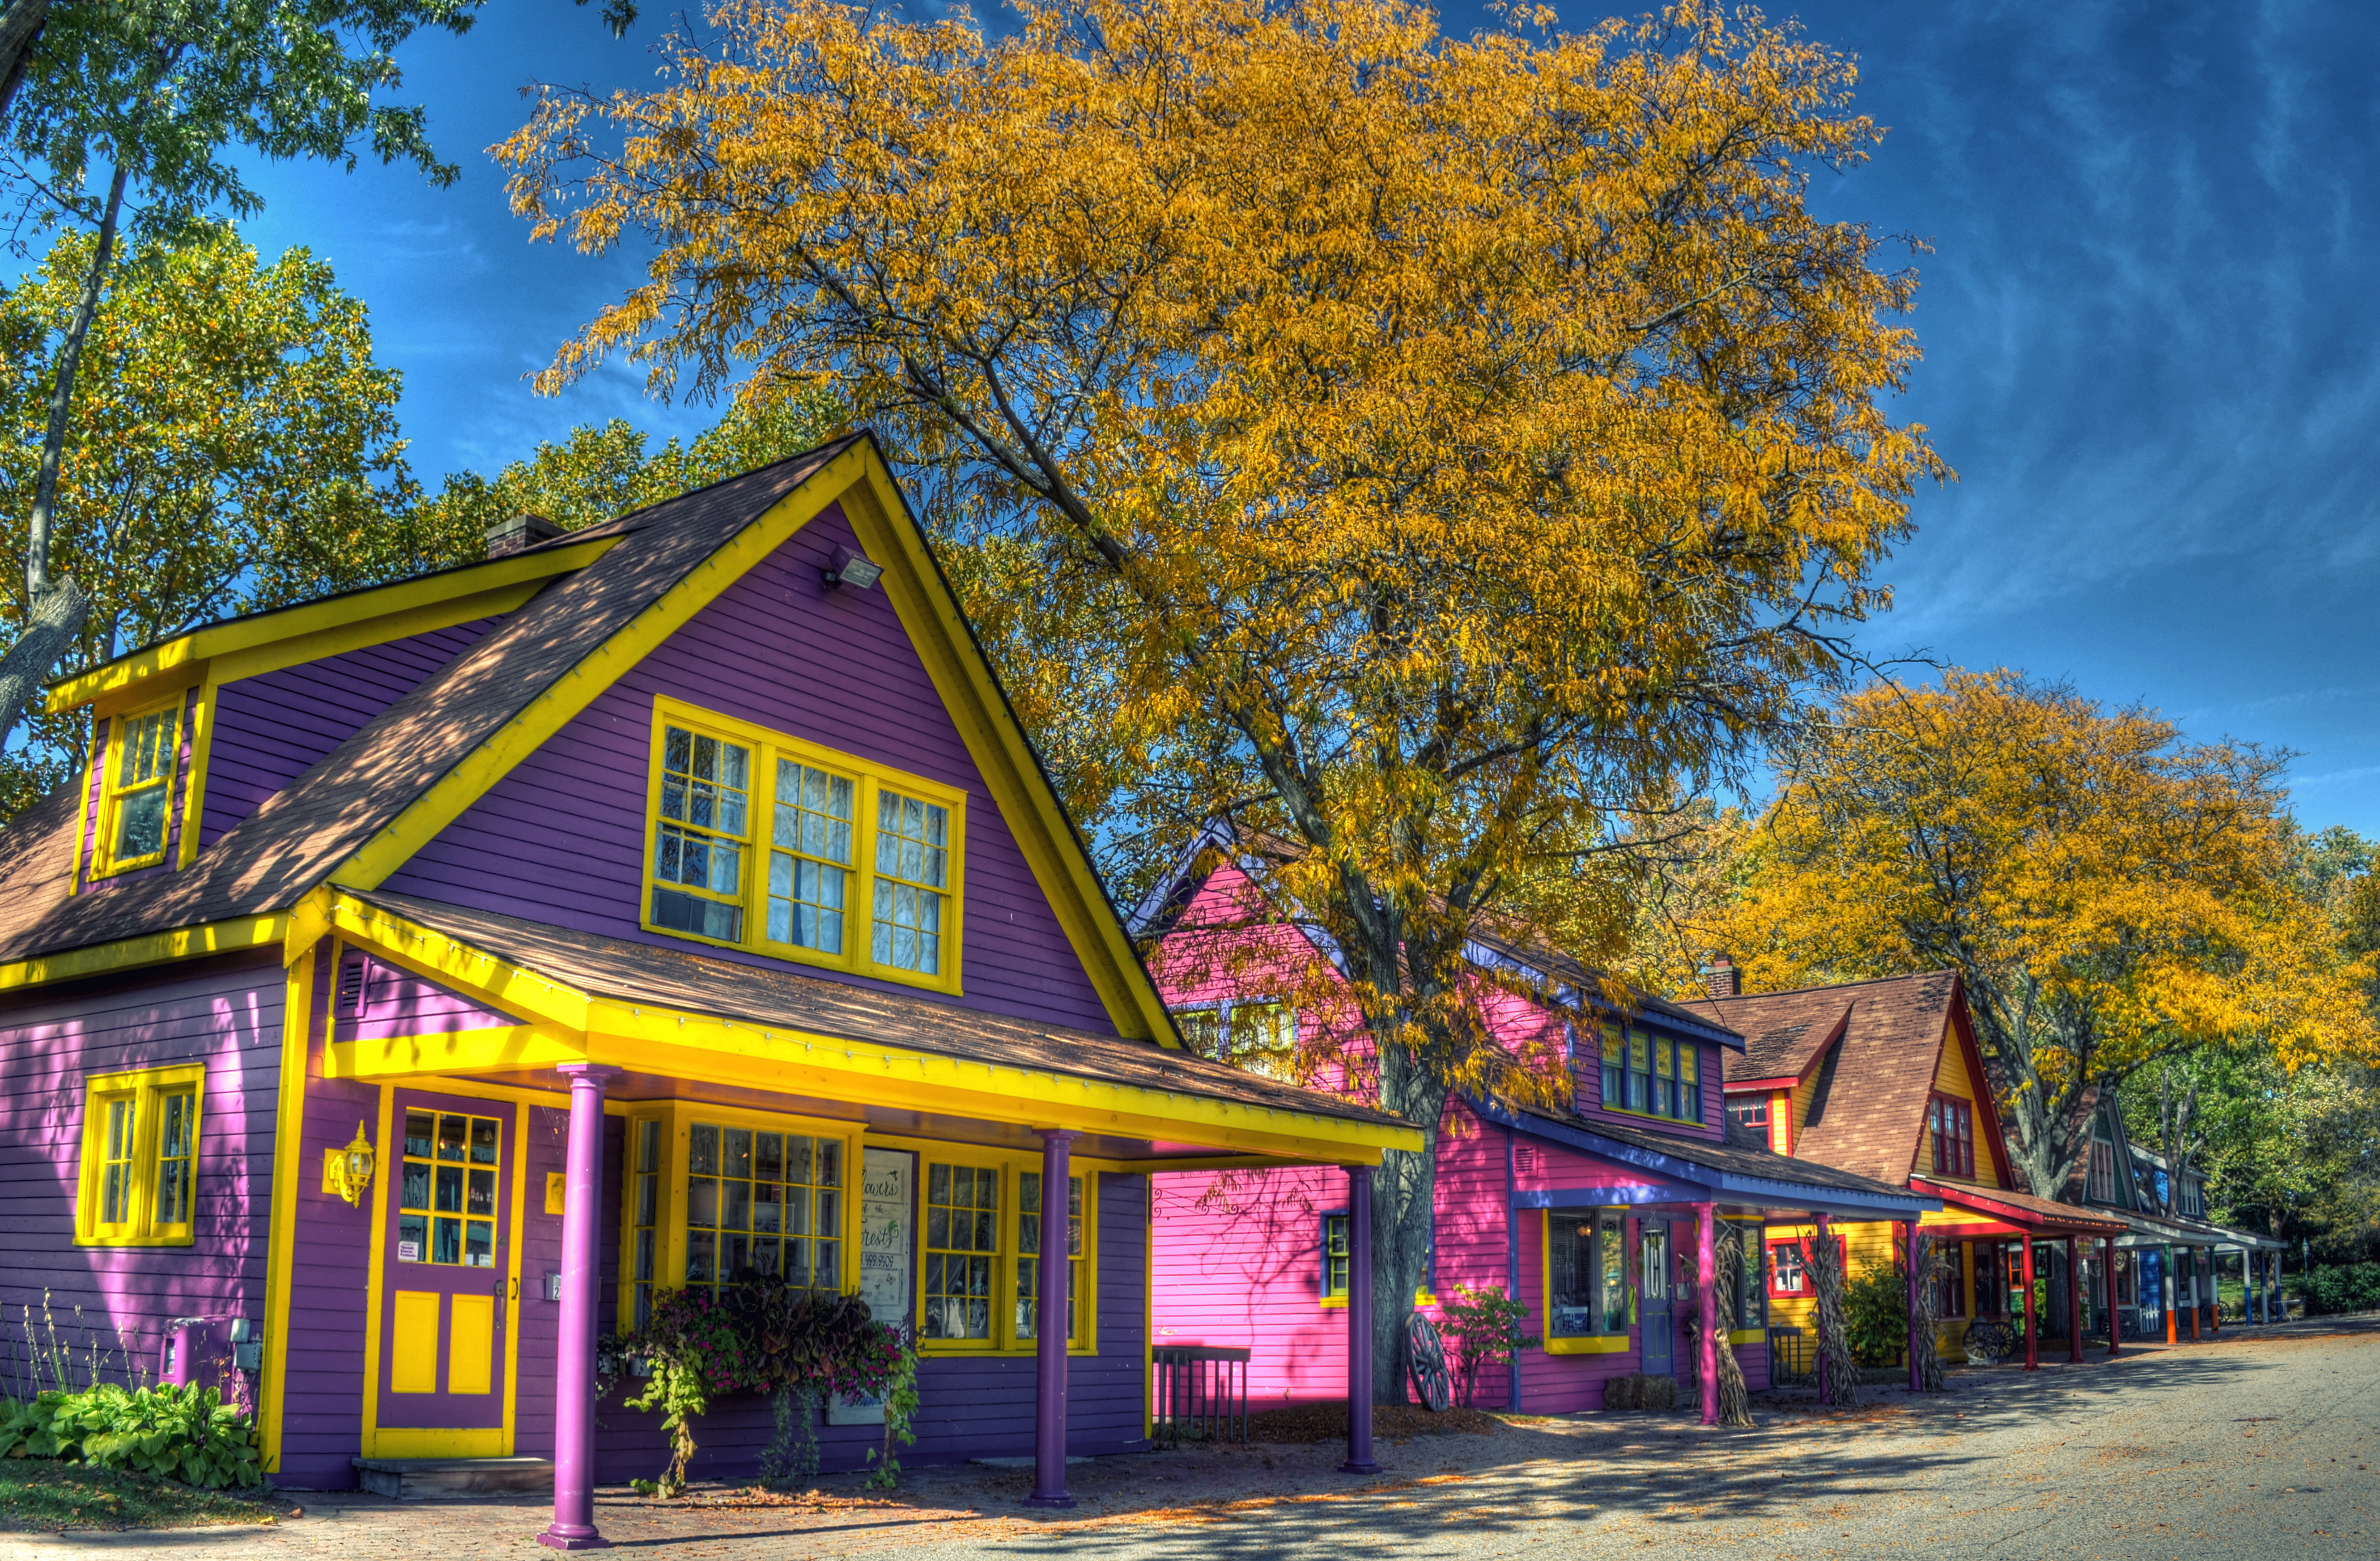 عکس زیبا ترین محله اروپا آمریکا با ساختمان های رنگی 